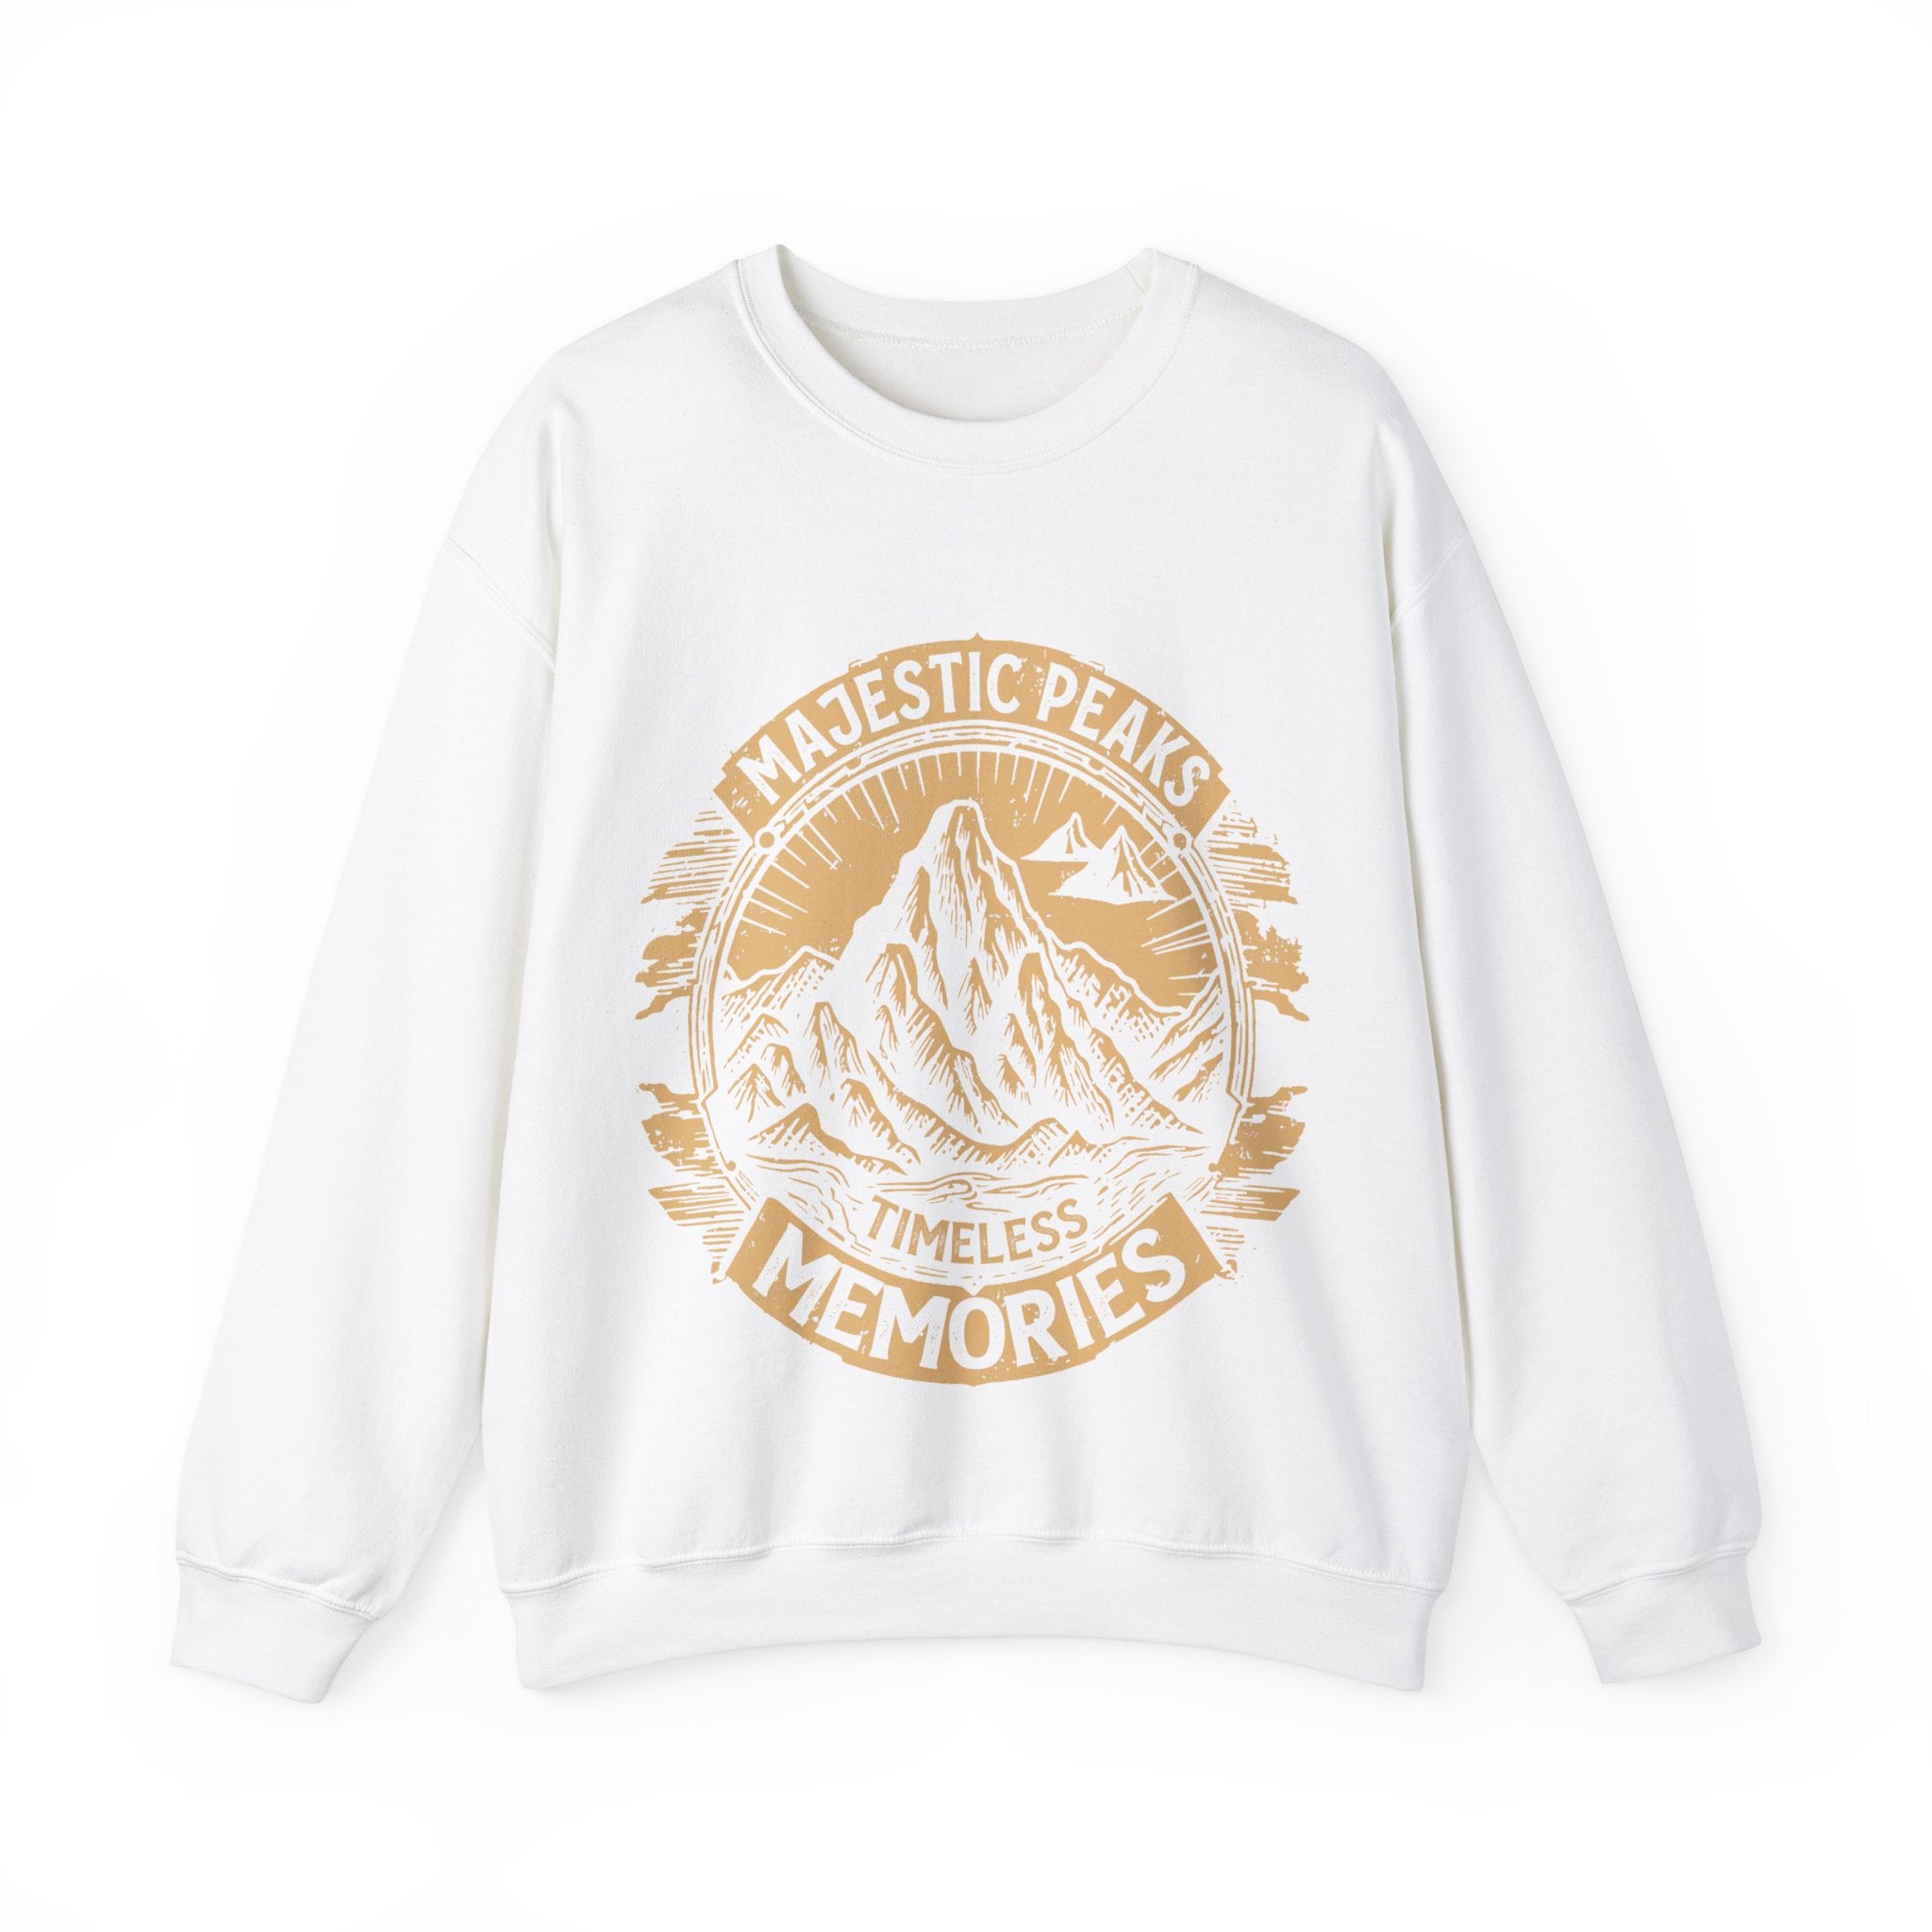 Women's "Majestic Peaks" Vintage Sweatshirt